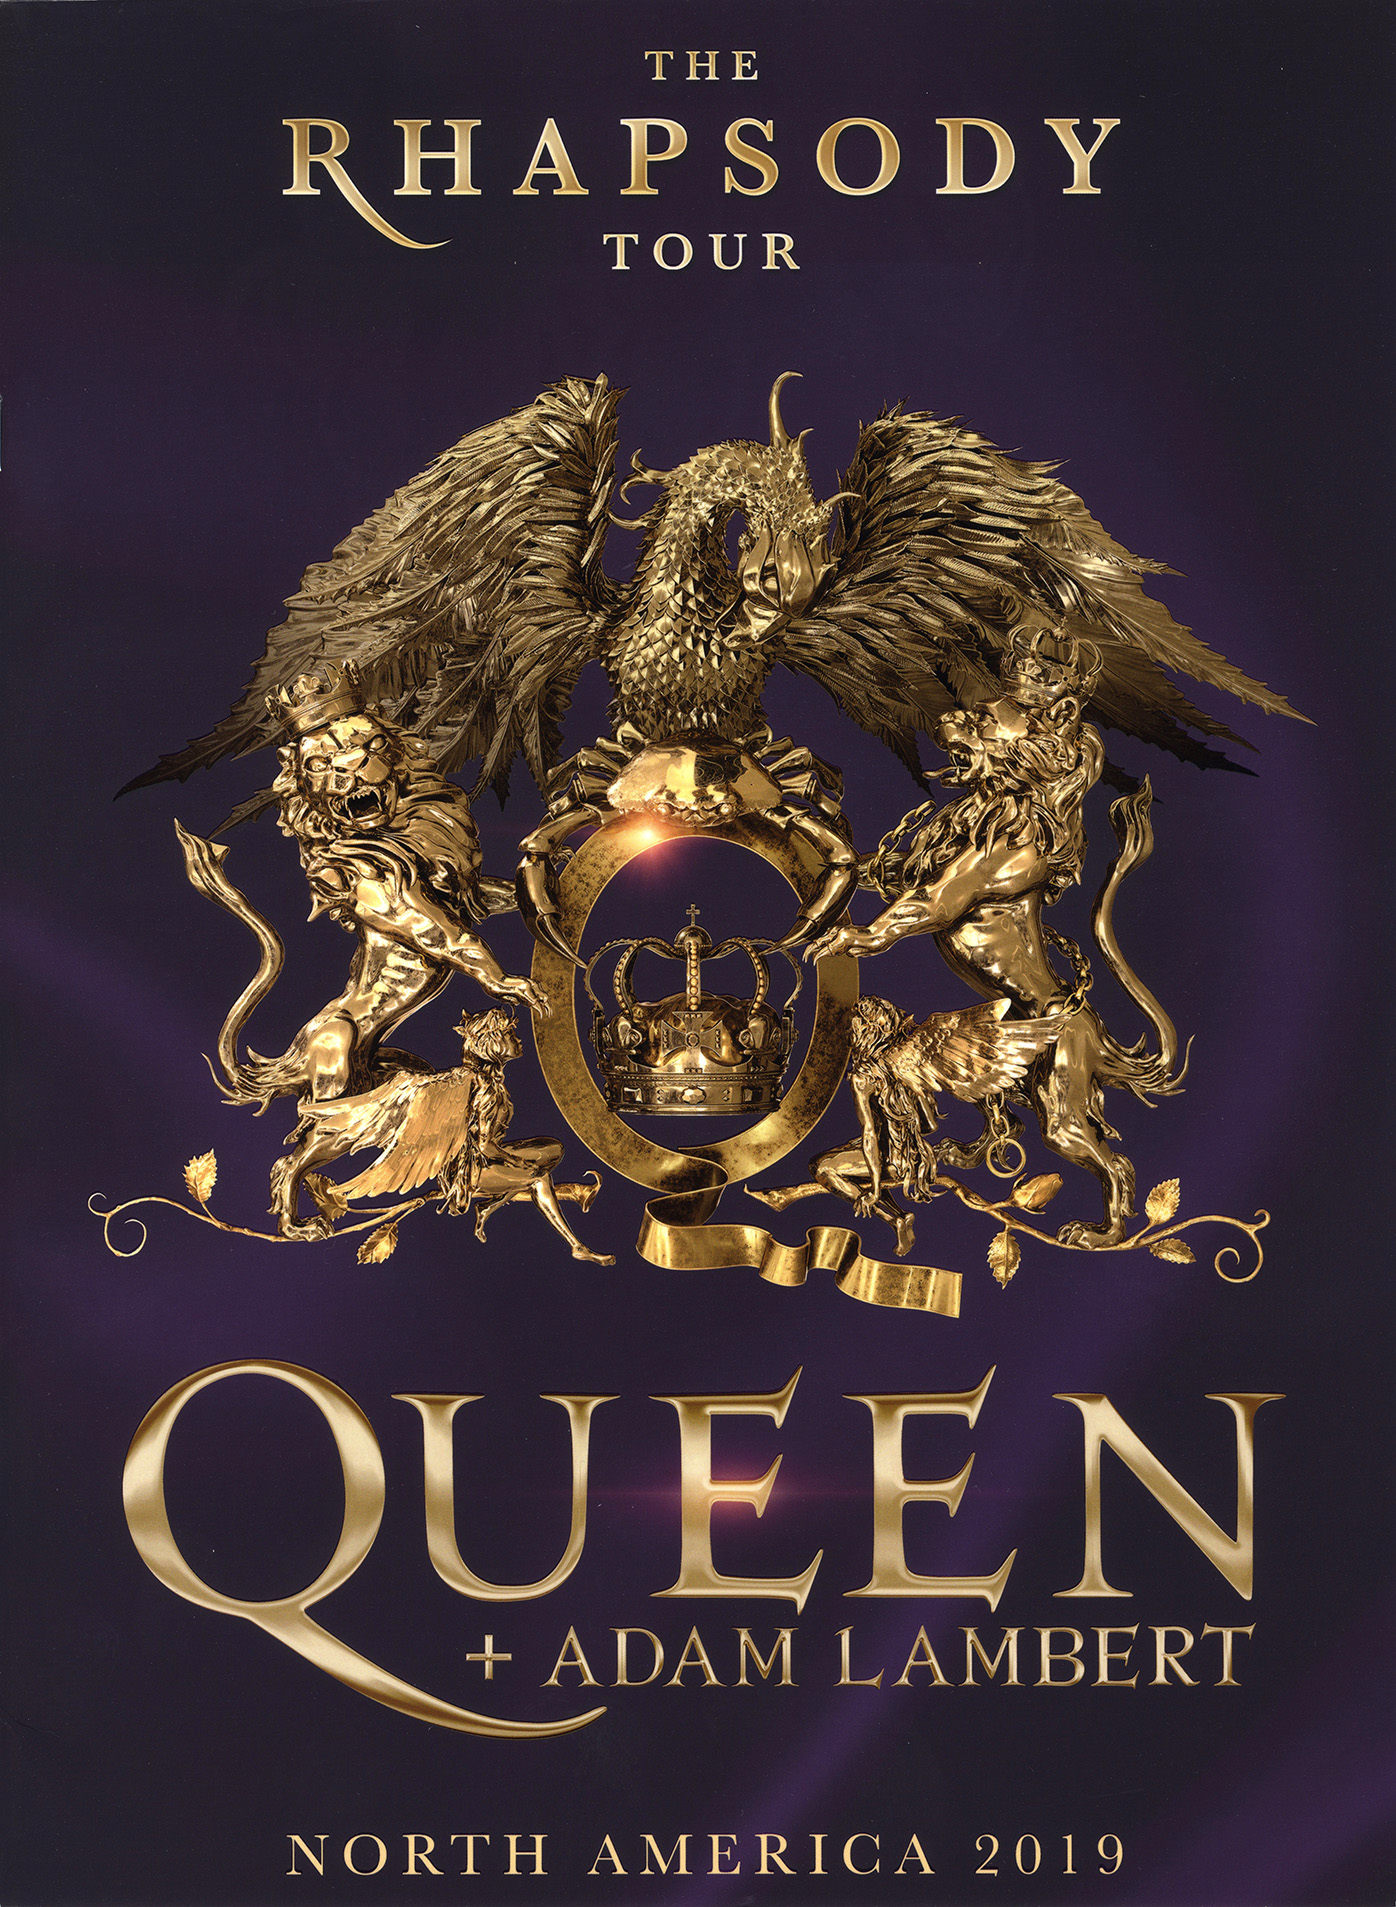 Queen + Adam Lambert - North America 2019